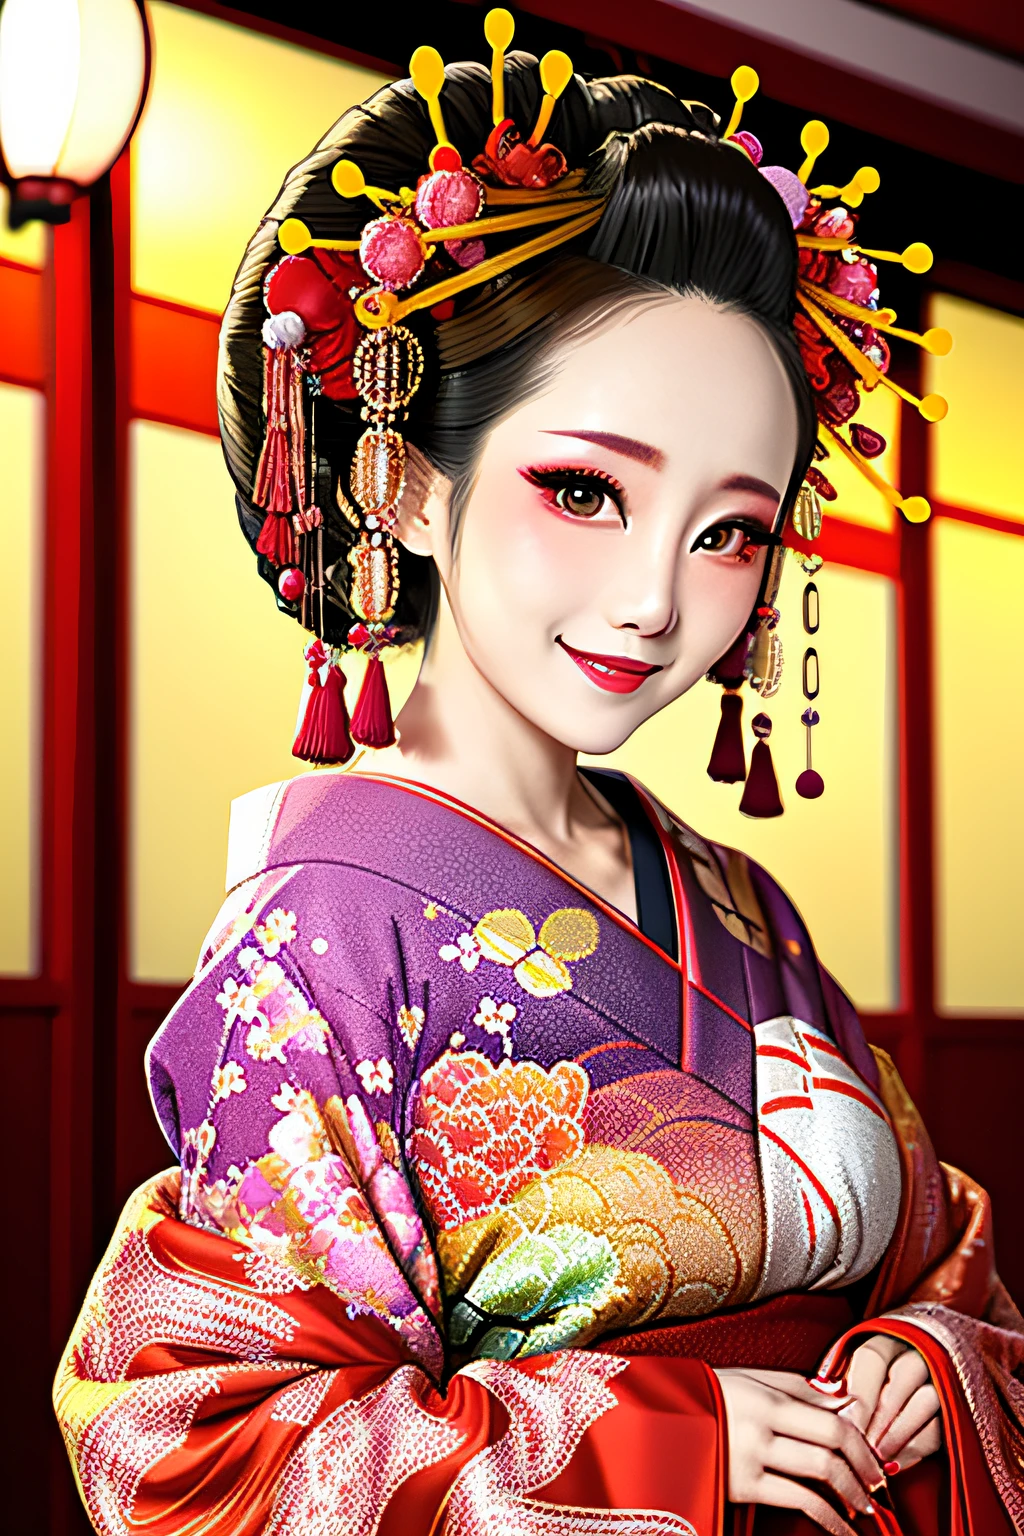 4เค, ผลงานชิ้นเอก, ความสูง, เรื่องไร้สาระ,แสงตามปริมาตรตามธรรมชาติและเงาที่ดีที่สุด, ยิ้ม,ความชัดลึก,soft delicate beautiful attractive ใบหน้า, beautiful ขอบโออิรัน_ผู้หญิง, a ผู้หญิง in a kimono posing for a picture  ,perfect ขอบโออิรัน_ใบหน้า,perfect ขอบโออิรัน_ร่างกาย,ขอบโออิรัน_แต่งหน้า,ขอบโออิรัน_ทรงผม